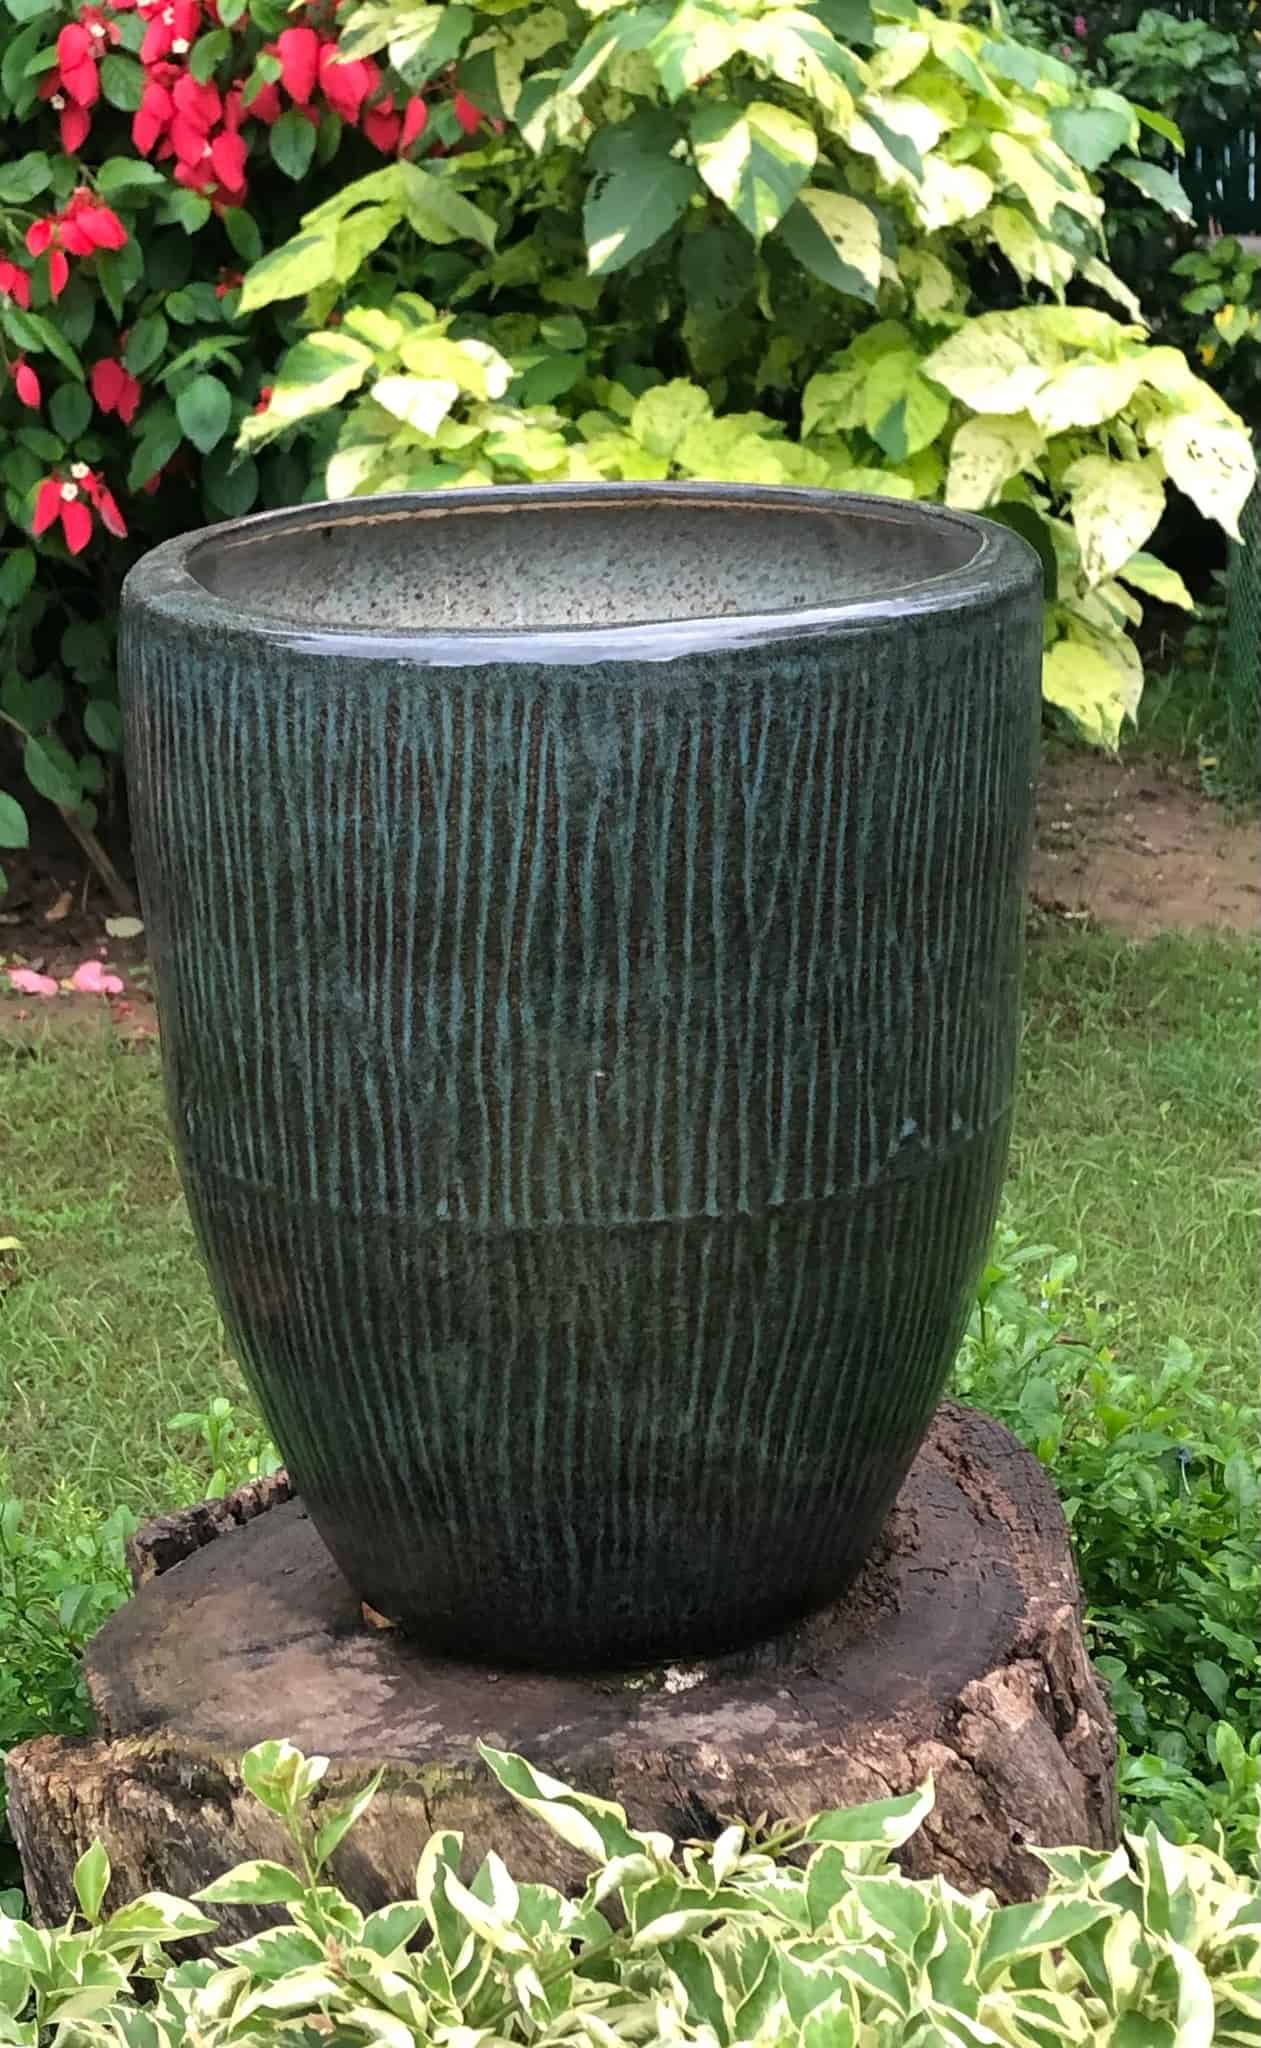 A dark coloured ceramic planter